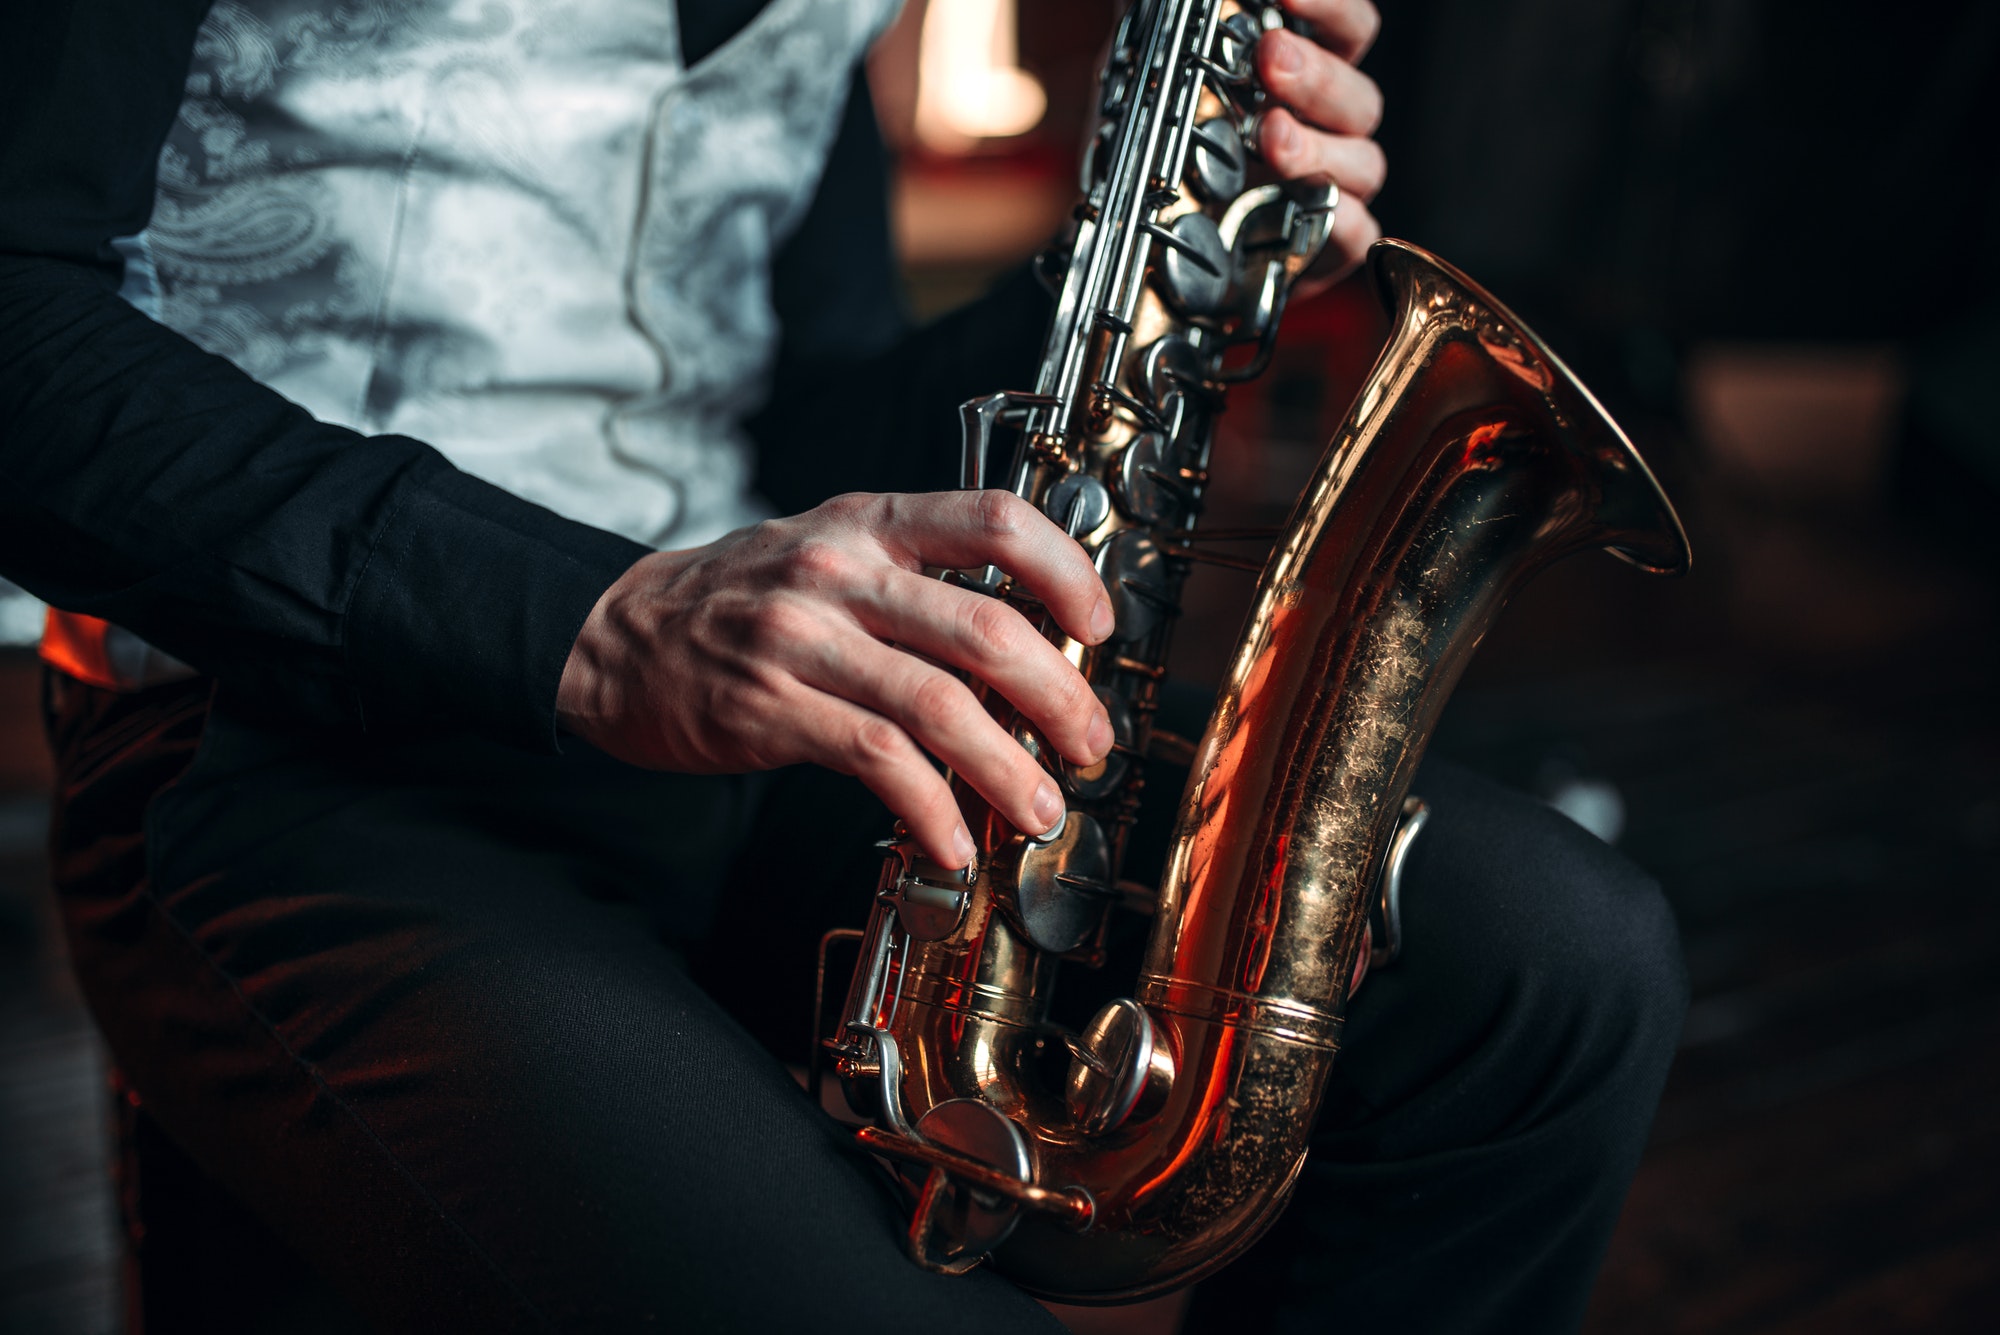 Jazz man hands holding saxophone closeup